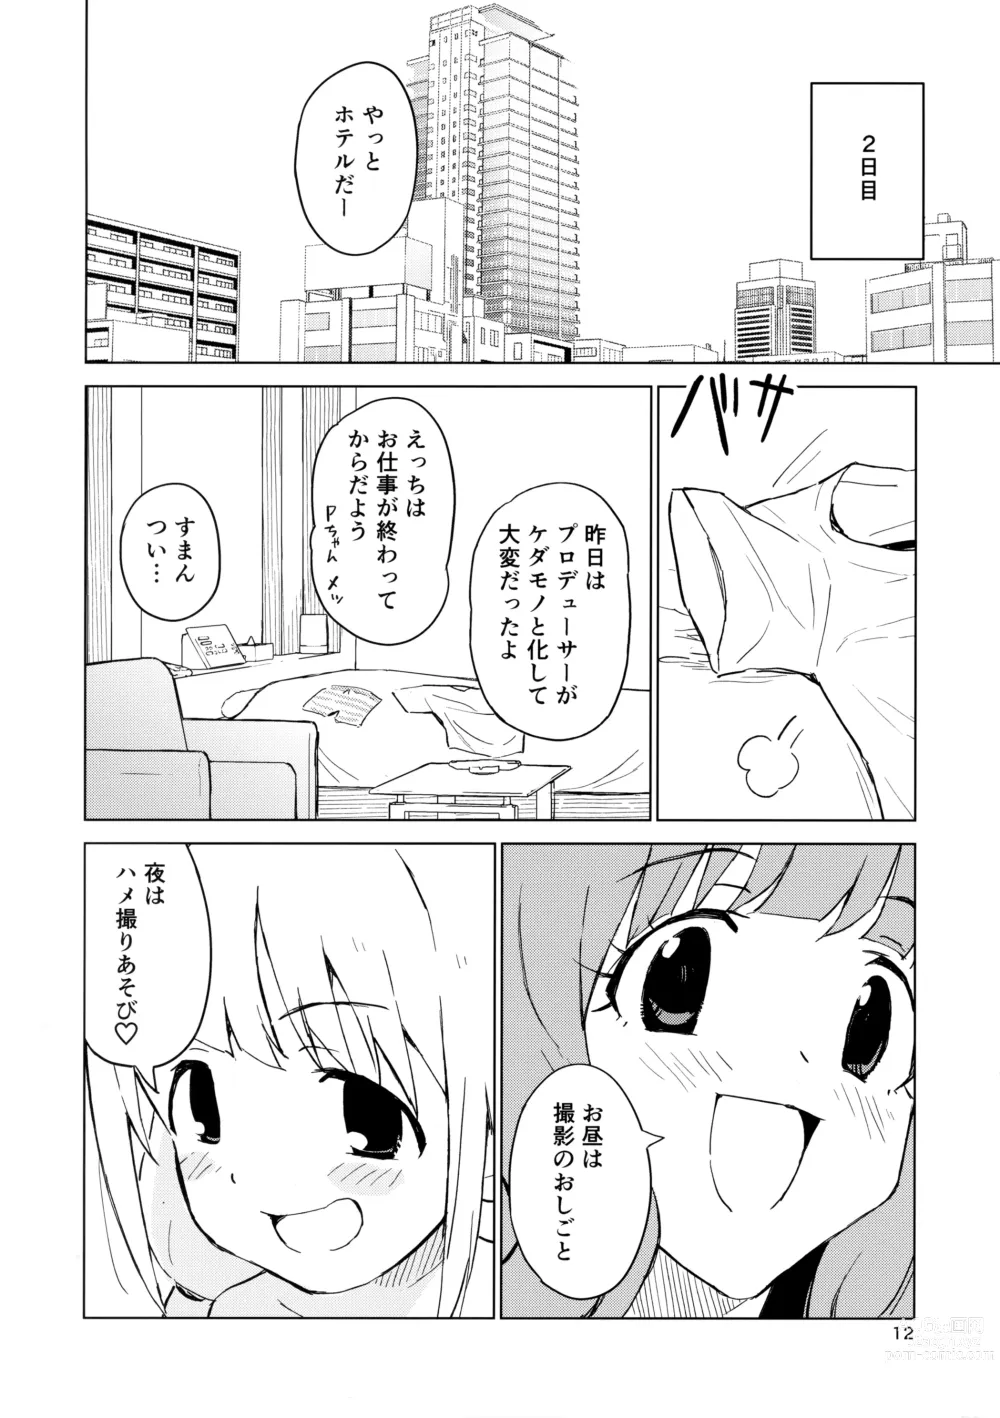 Page 11 of doujinshi AnKira Ura Satsueikai Cosplay Hametori 7-renkin!